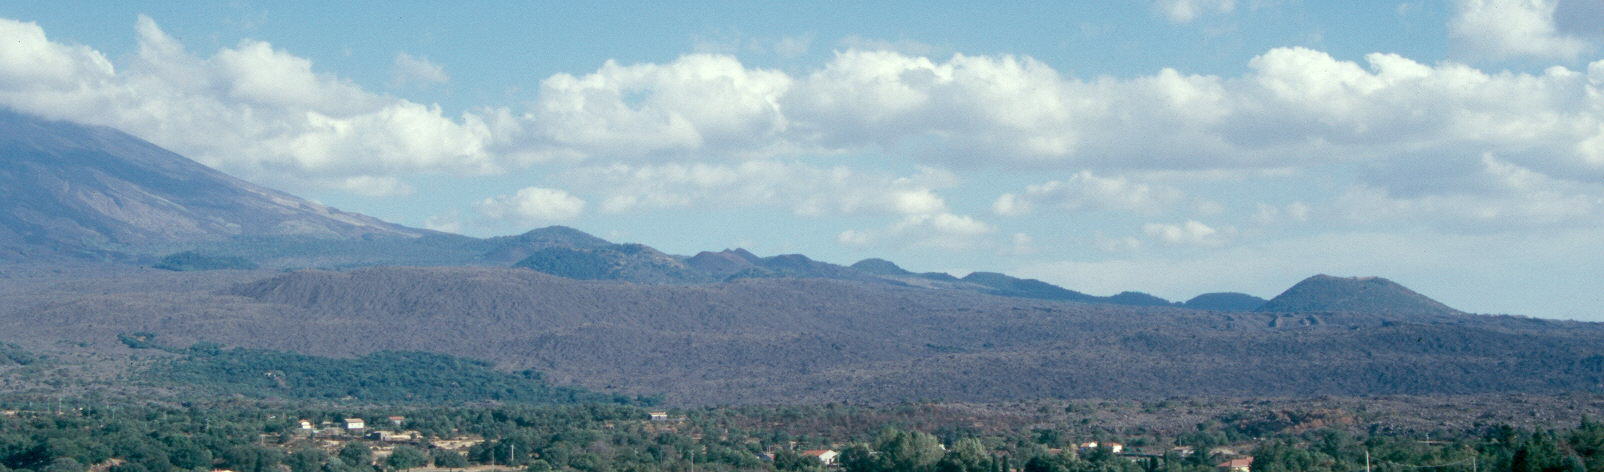 Conos de la vertiente suroriental. se observan los conos de Montes Fiori y las lavas de 1999, 1974, 1843 y 1763